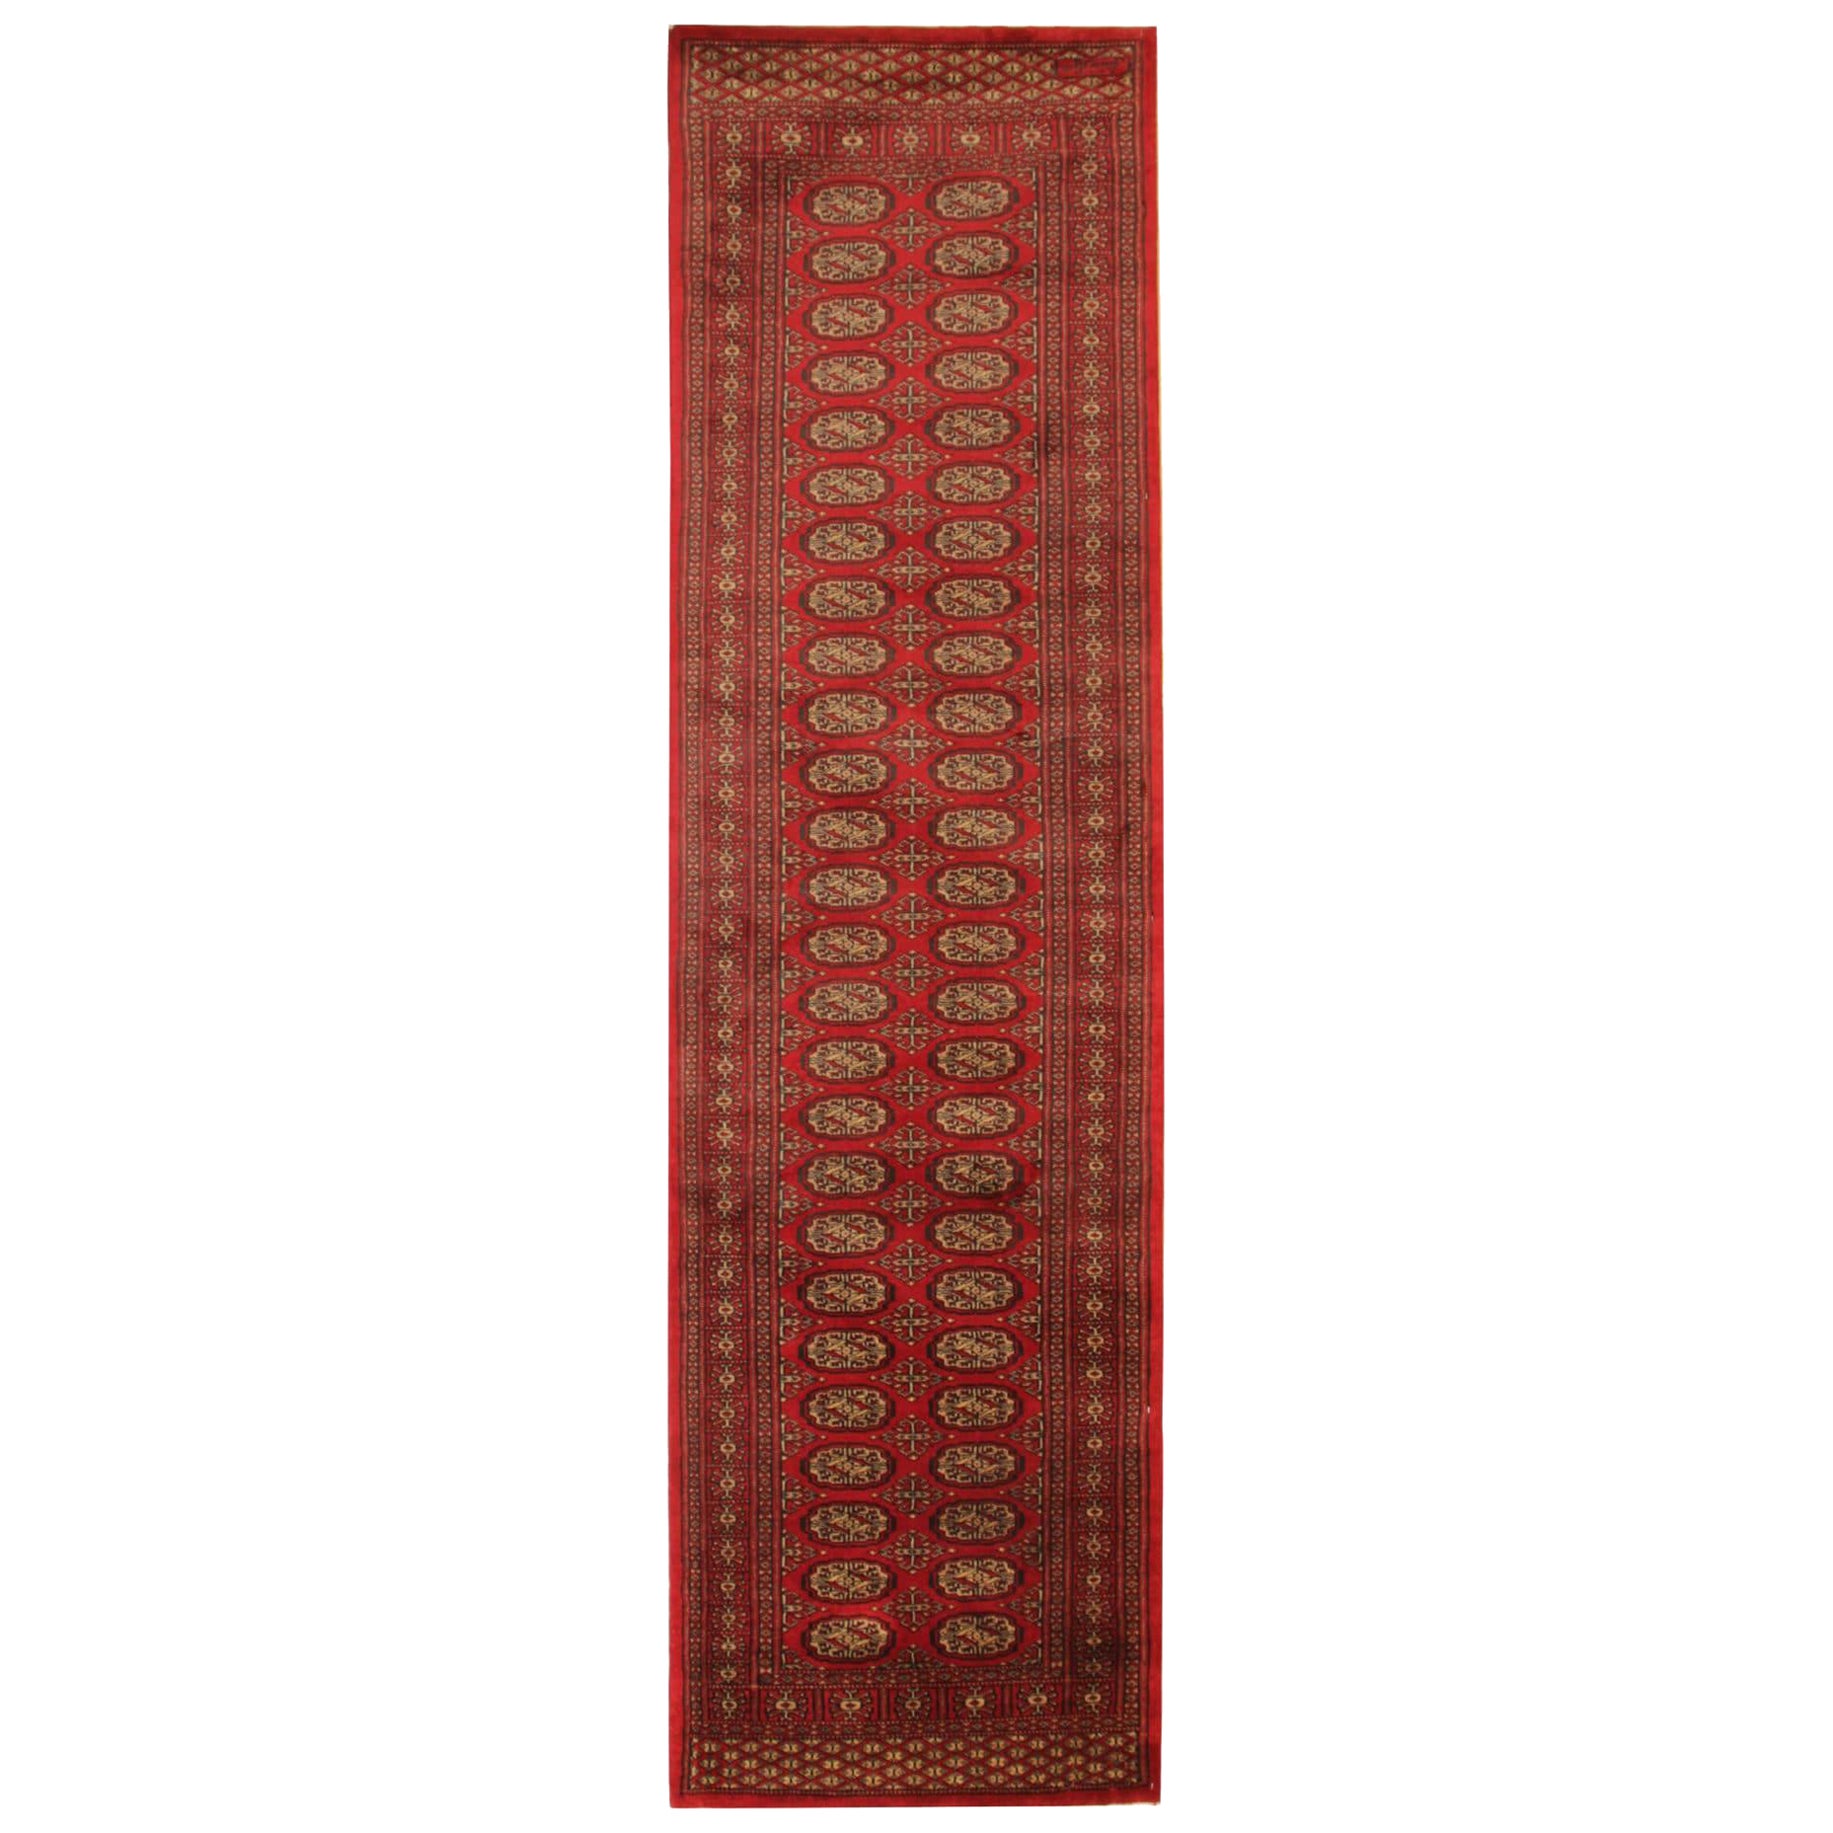 Red Runner Rug, Several Medallion Vintage Wool Bukhara Turkmen Stair Runner